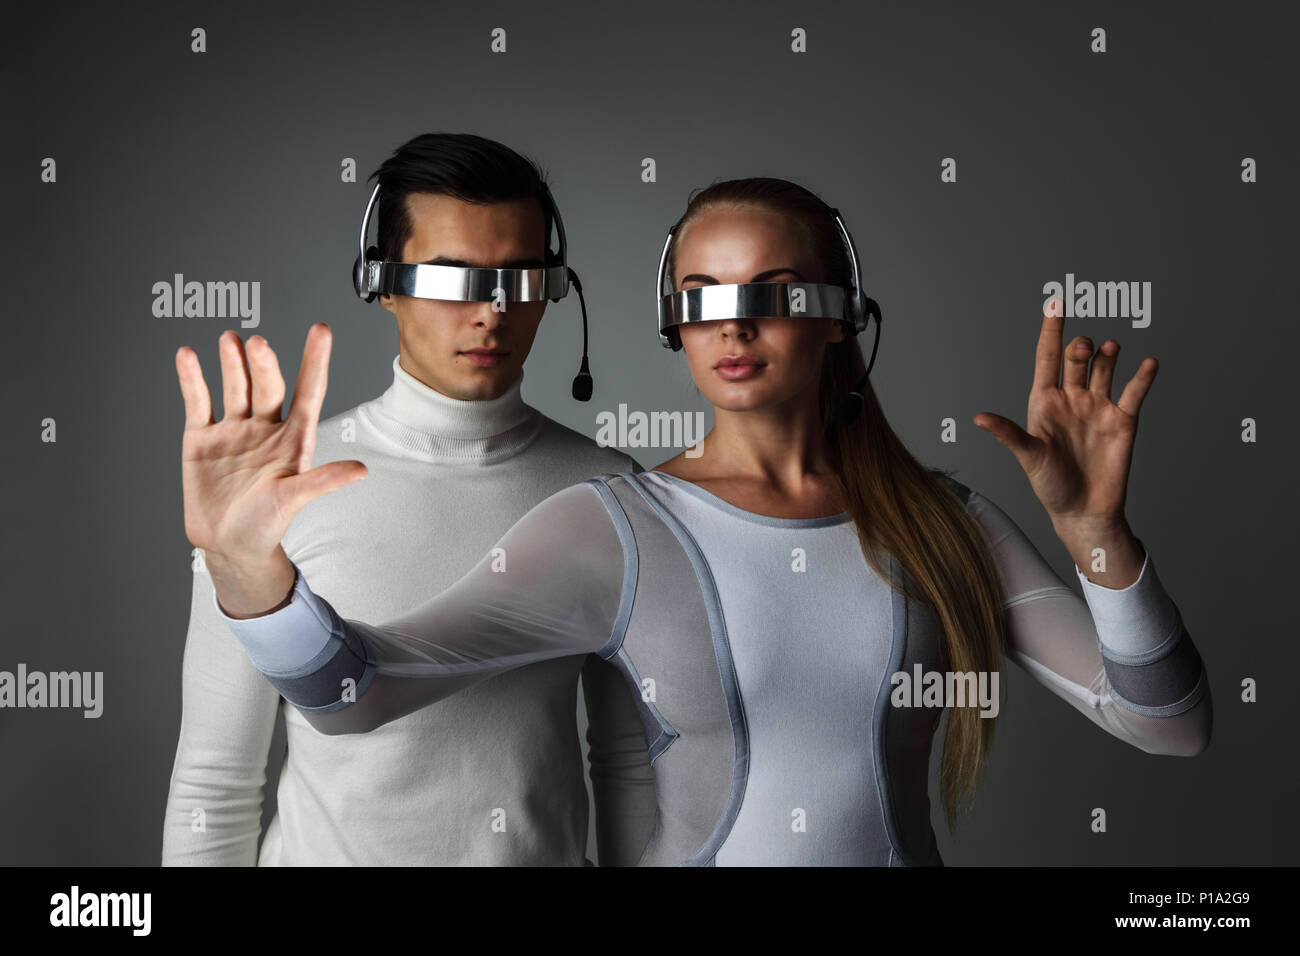 Paar arbeiten mit futuristischen Anzeige mit futuristischen VR-Brille,  Innovation, Zukunft Konzept Stockfotografie - Alamy